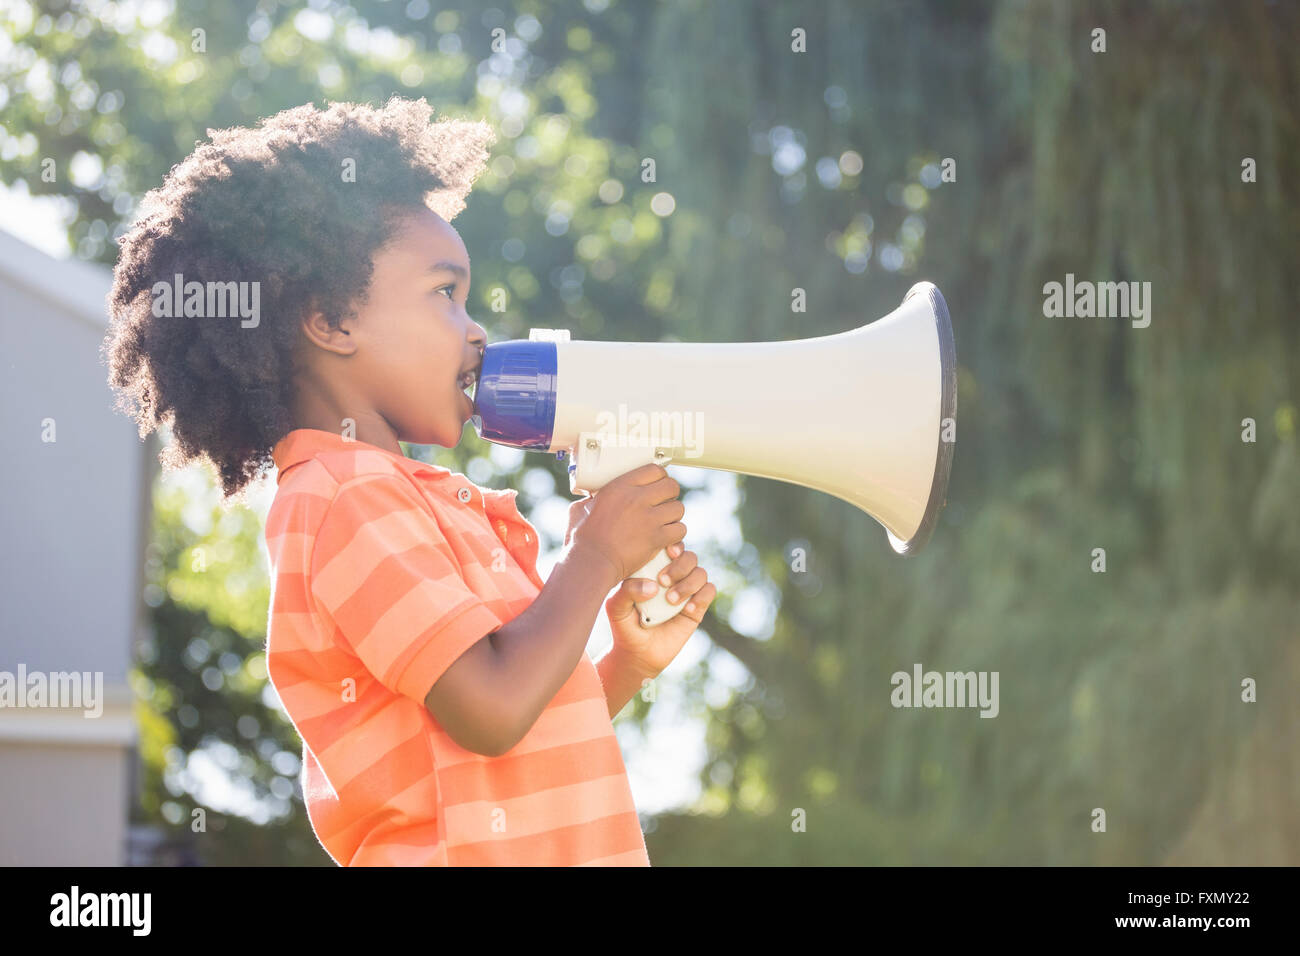 Joli garçon de race mixte intervenant sur un mégaphone Banque D'Images